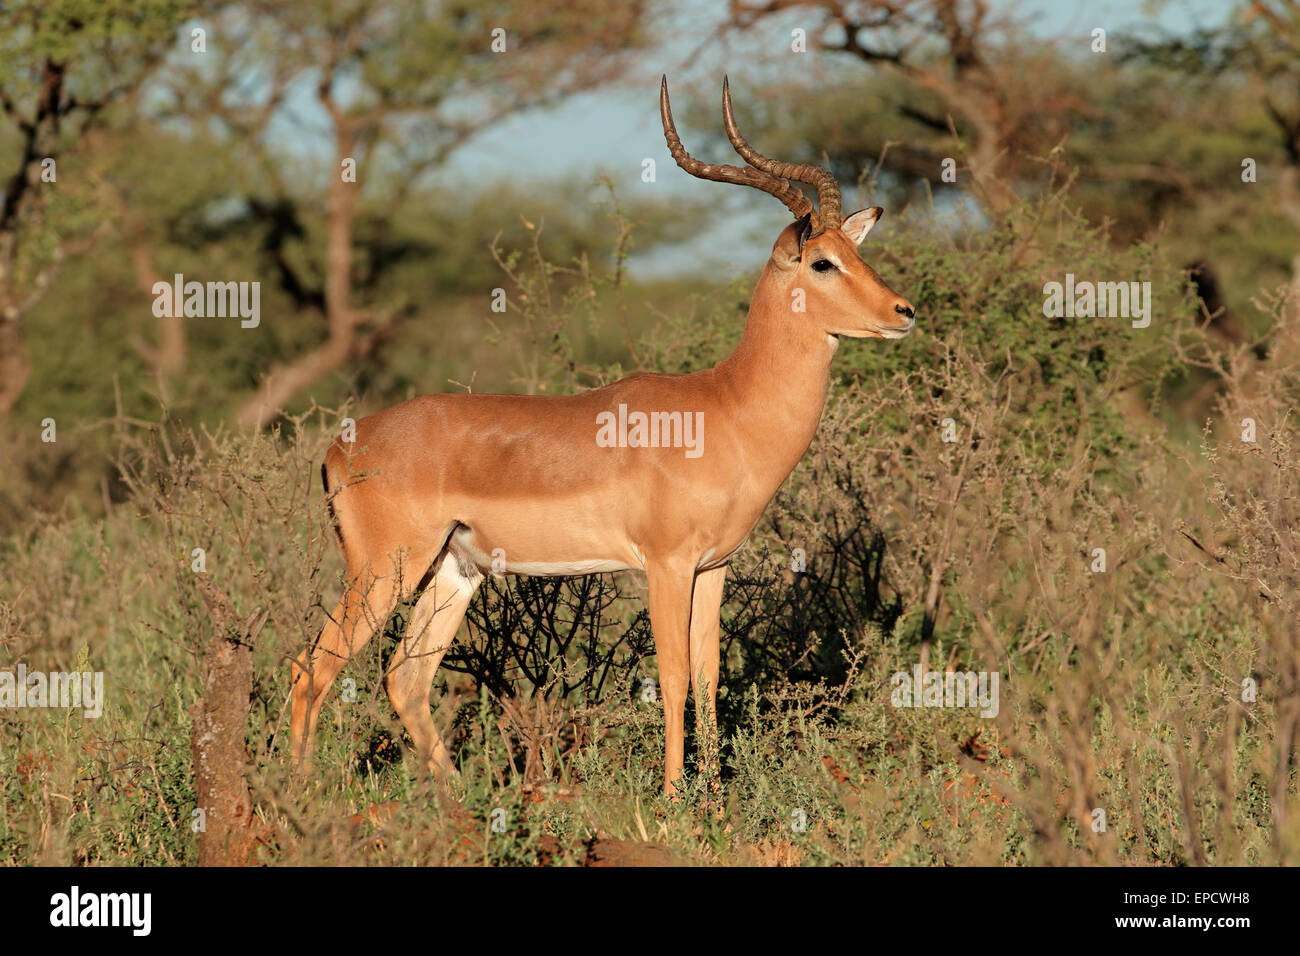 Un mâle antilope Impala (Aepyceros melampus) dans l'habitat naturel, l'Afrique du Sud Banque D'Images